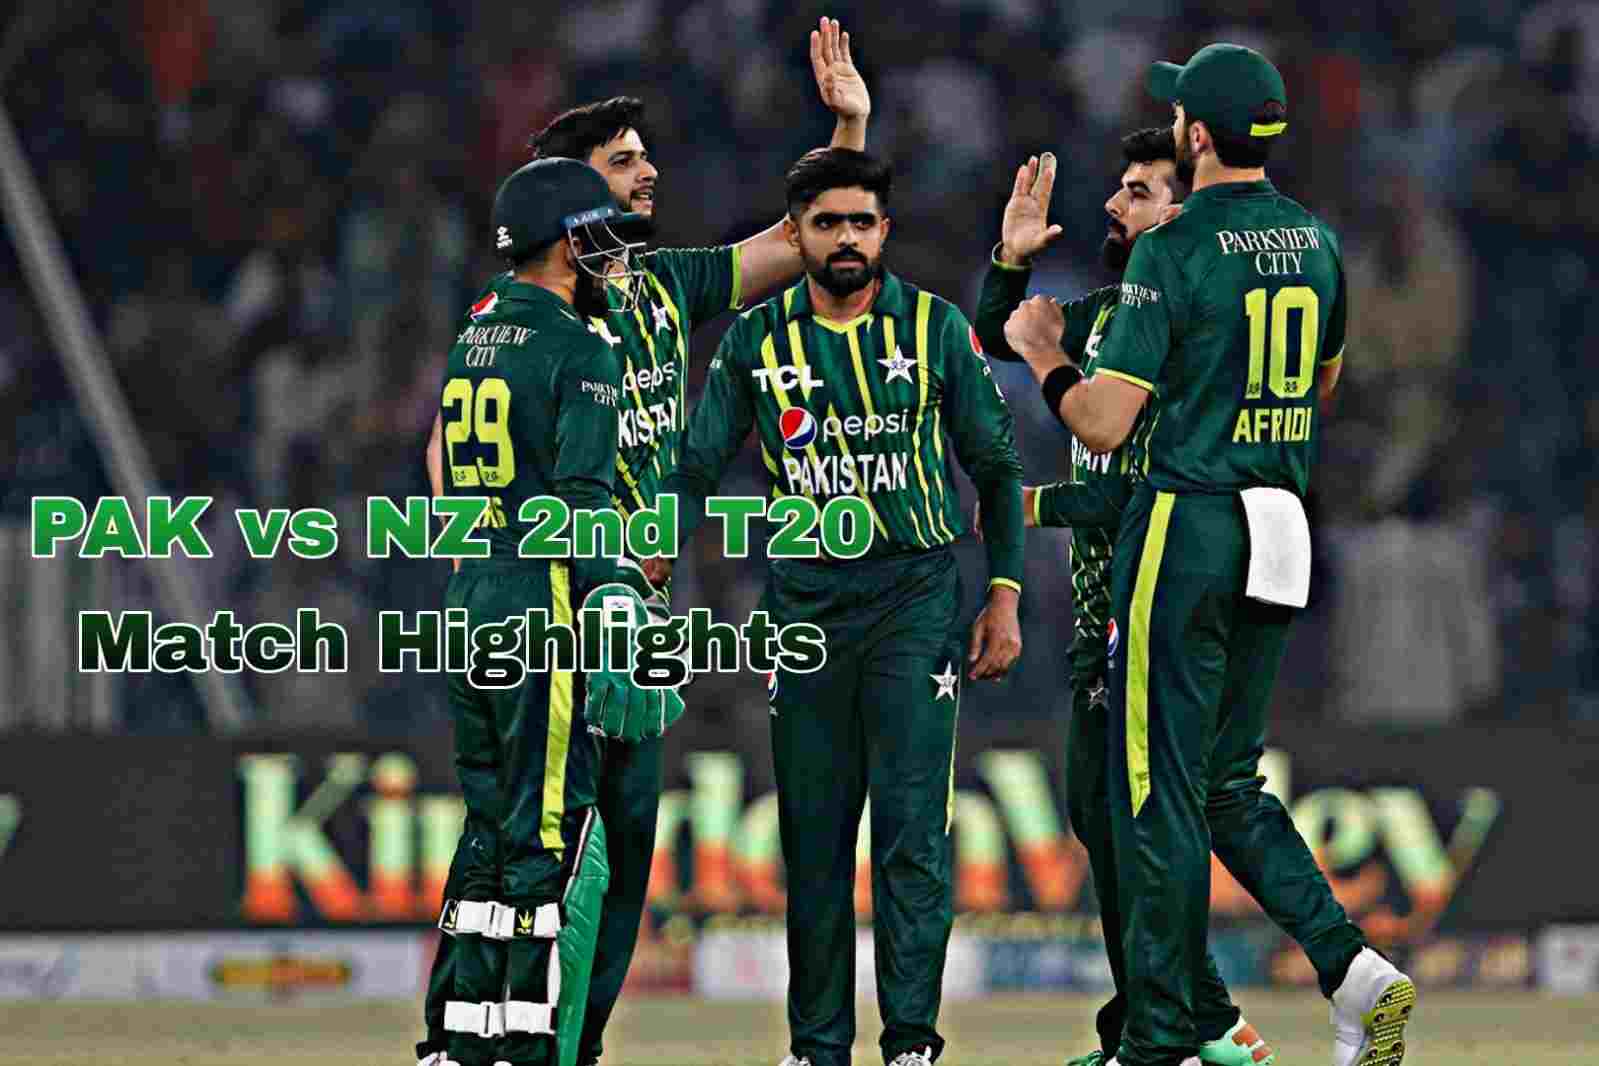 PAK vs NZ Match Highlights Babar Azam's century helped Pakistan beat